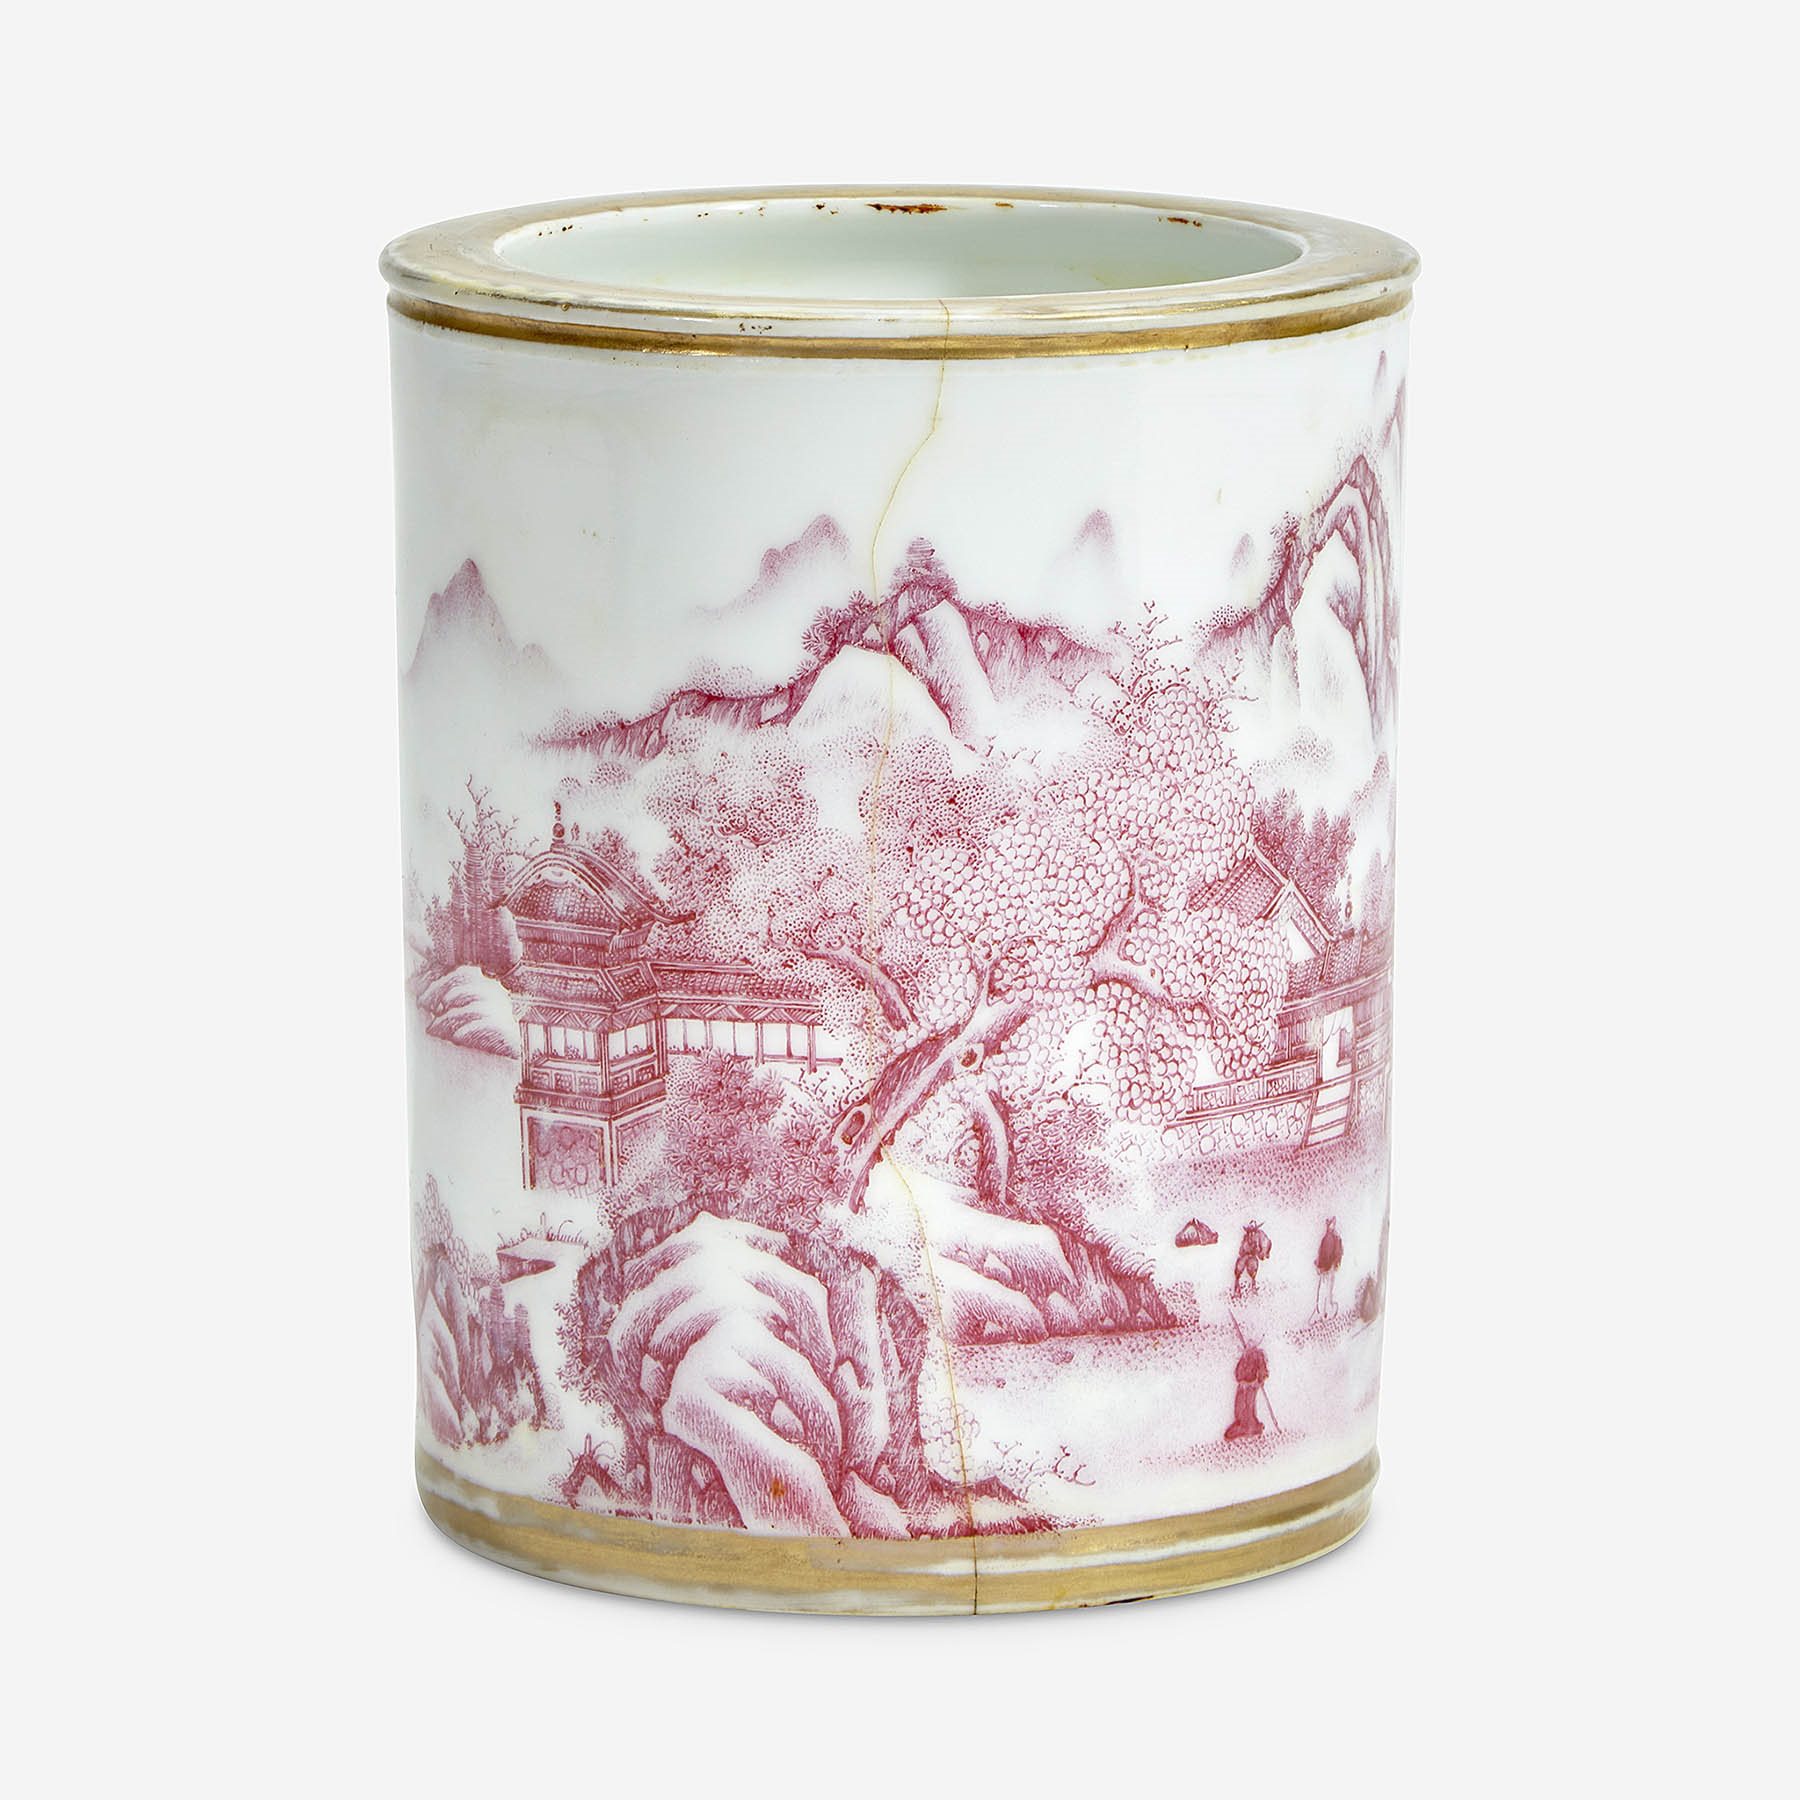  Chinese puce-enameled porcelain cylindrical brush pot